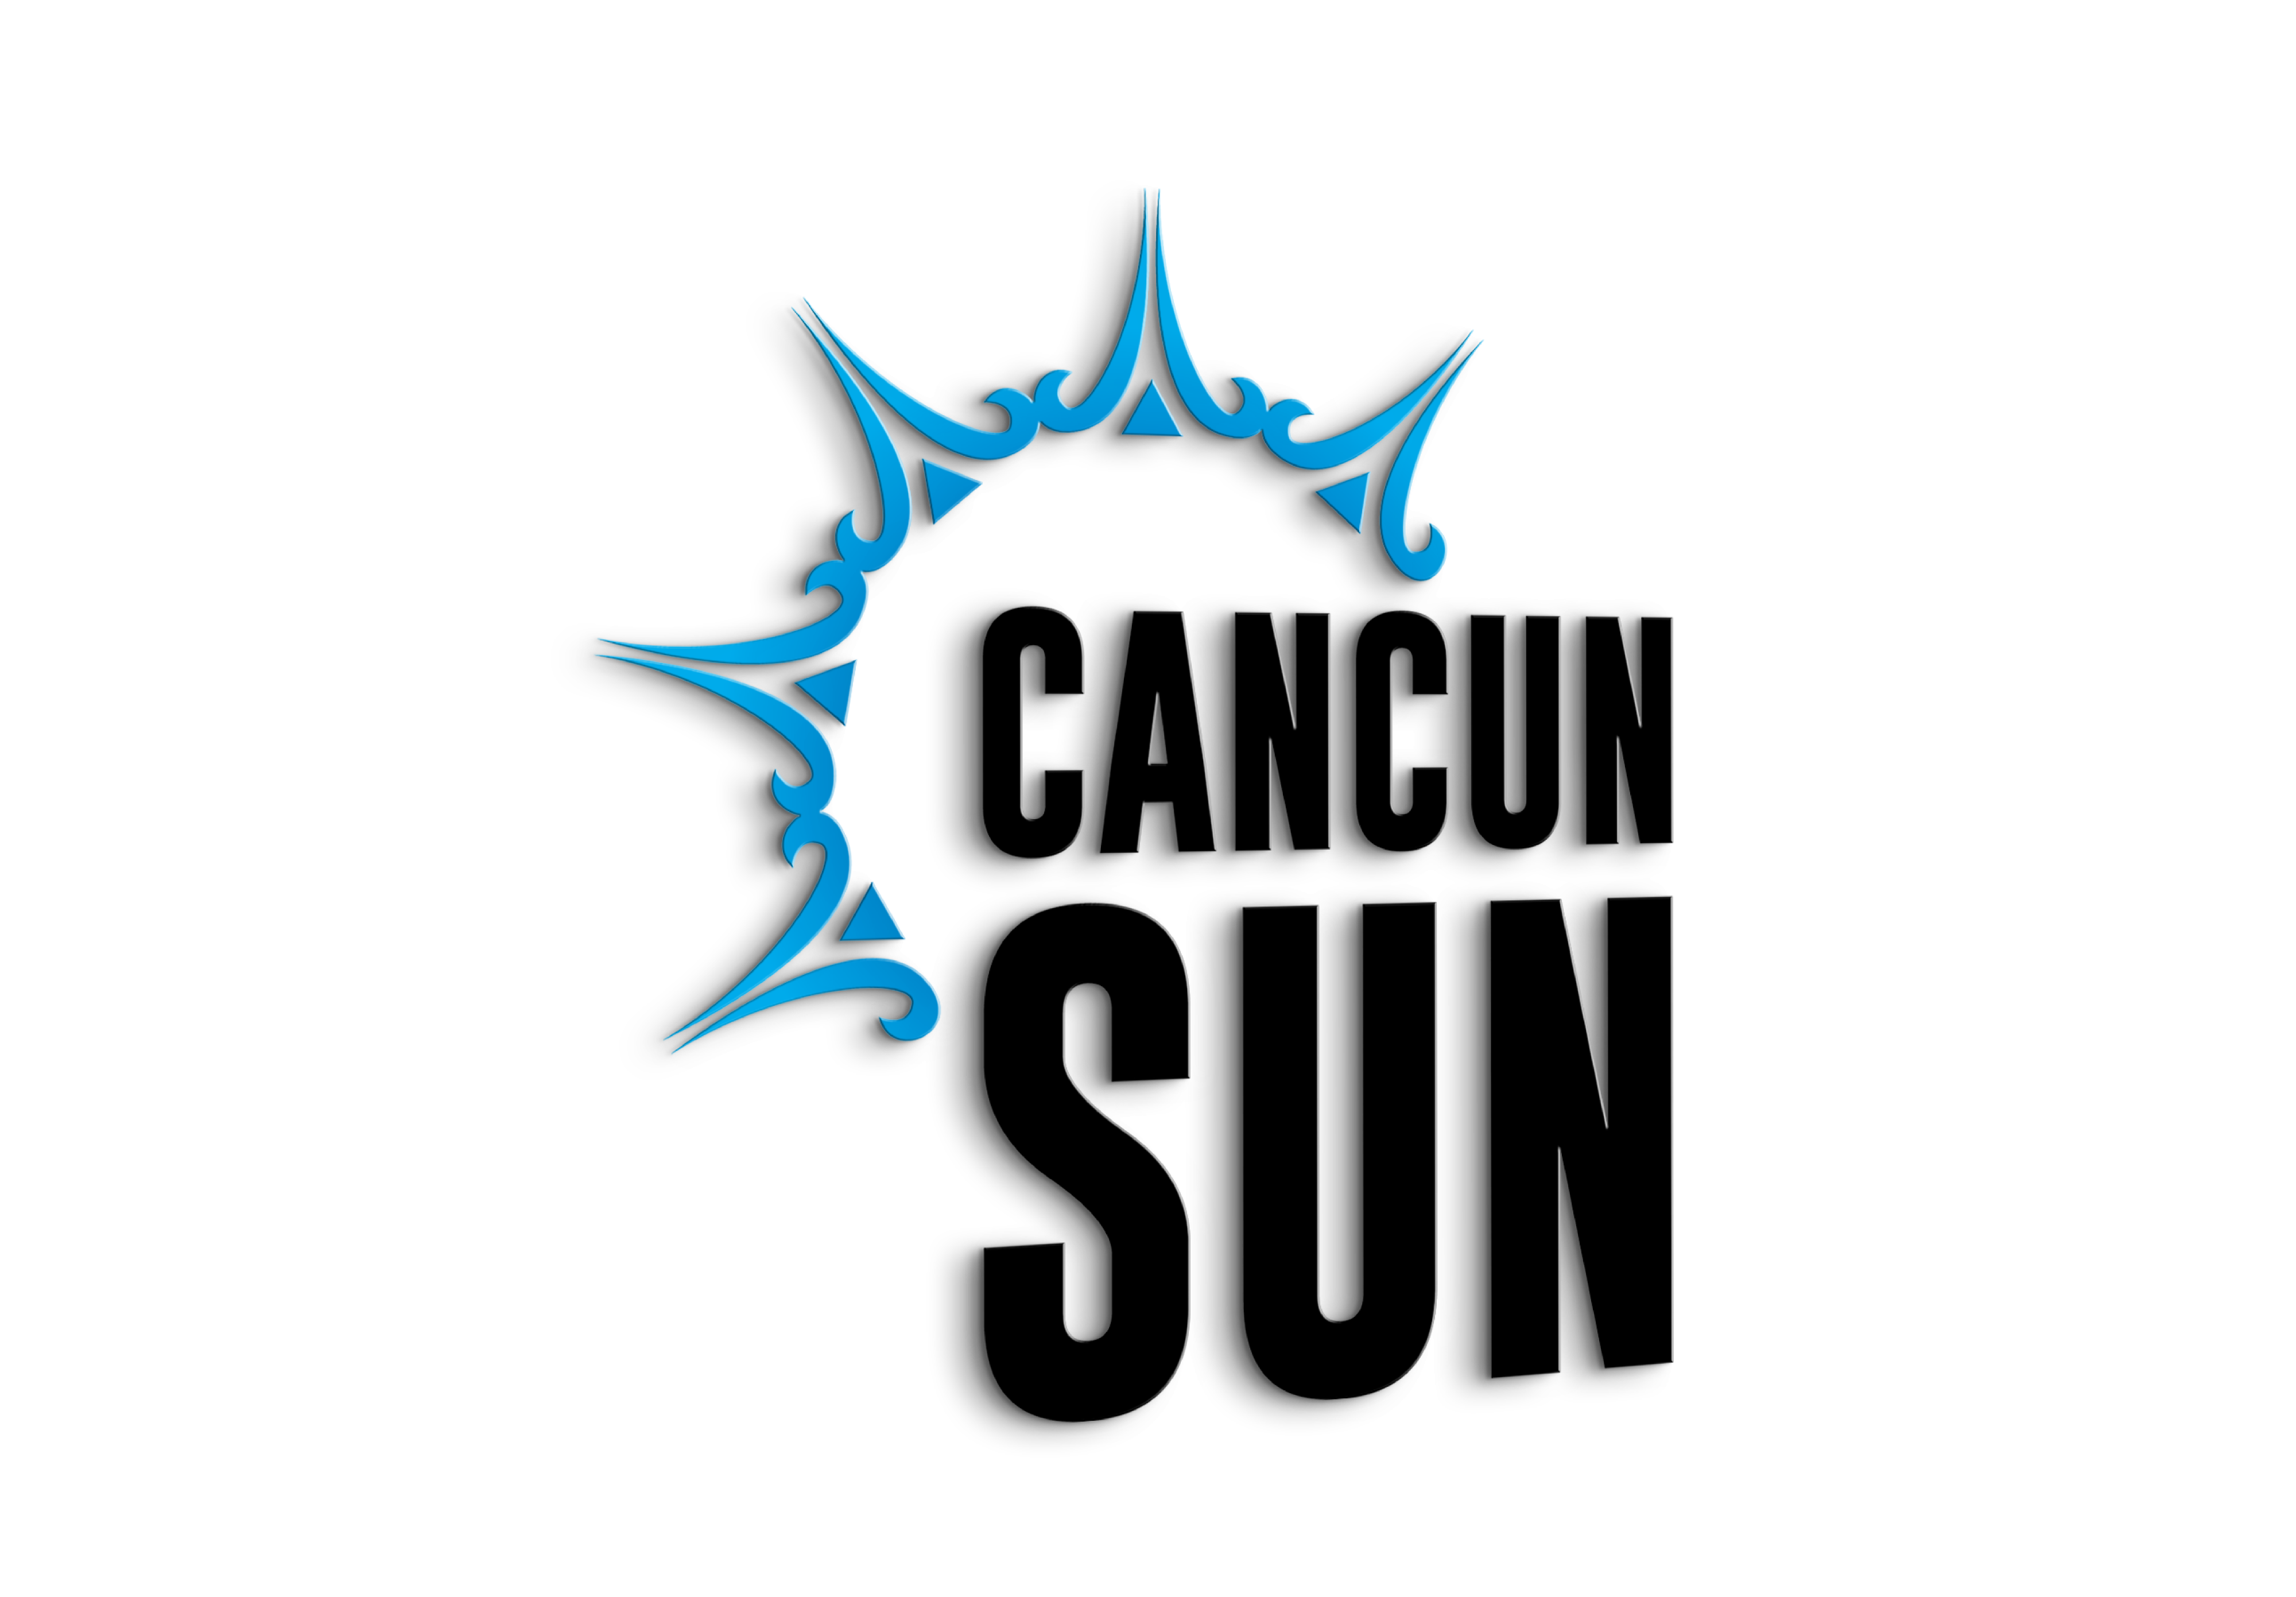 Cancun Sun